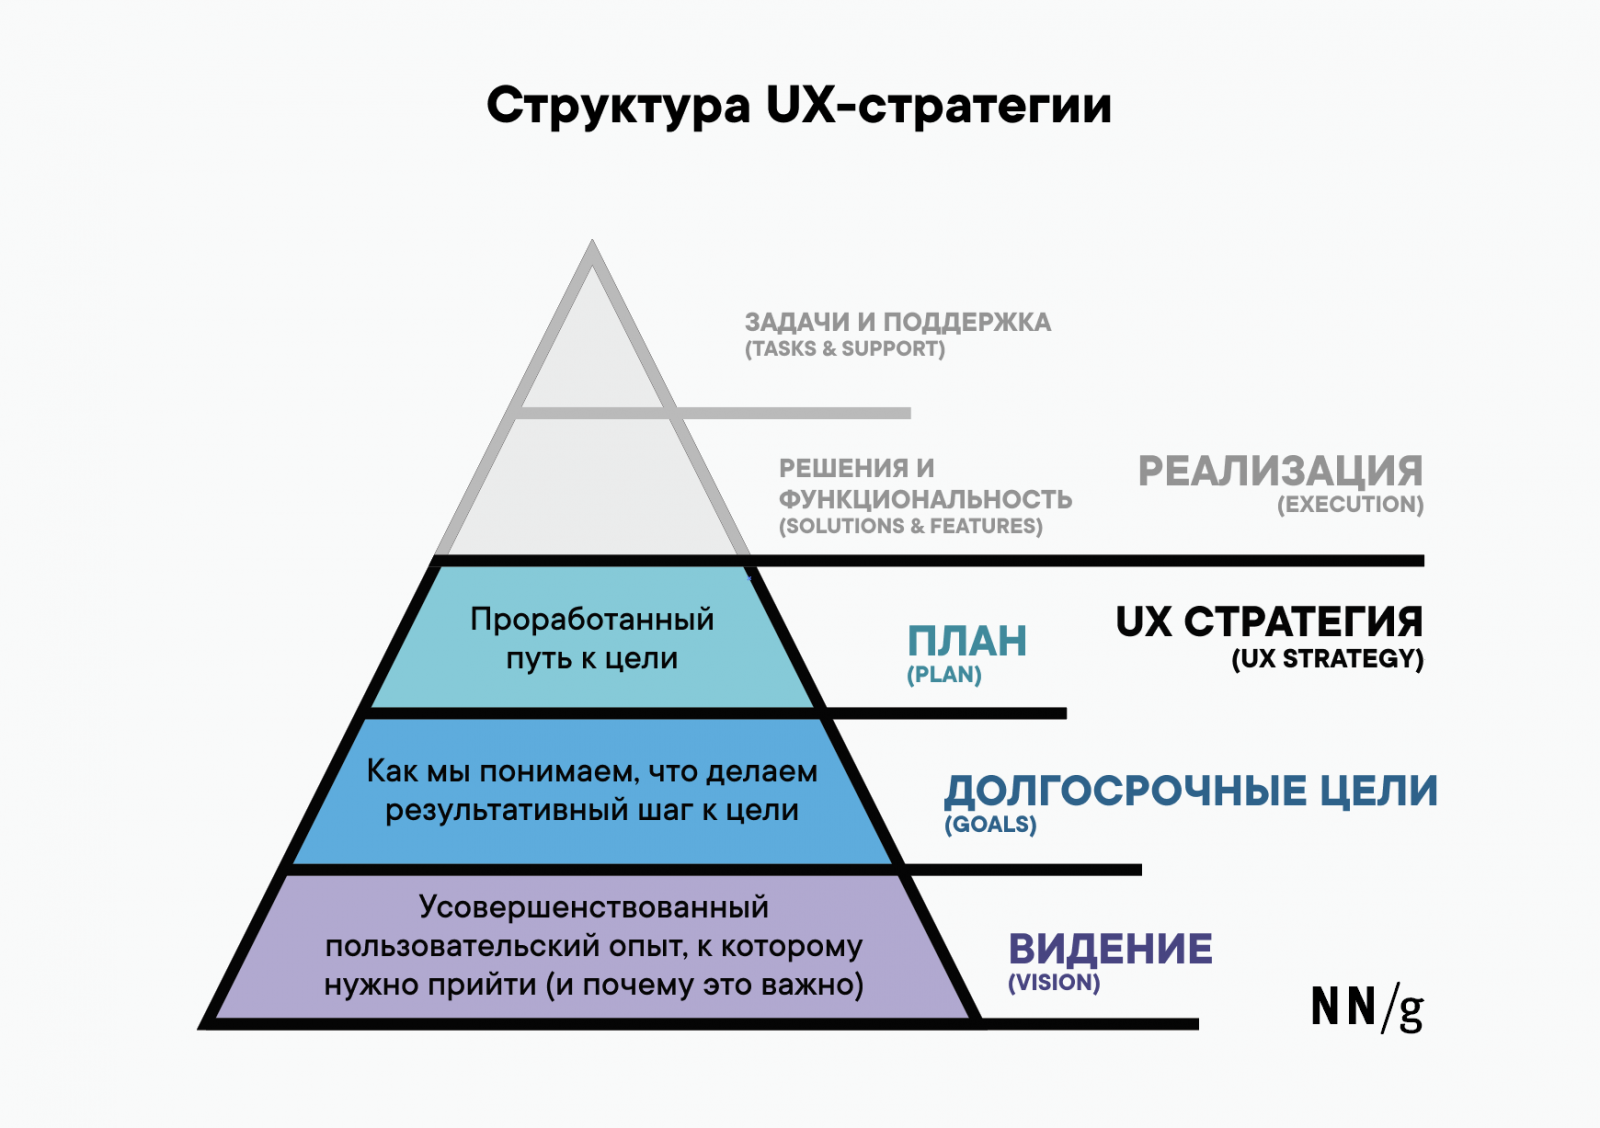 UX-стратегия: 3 составляющих